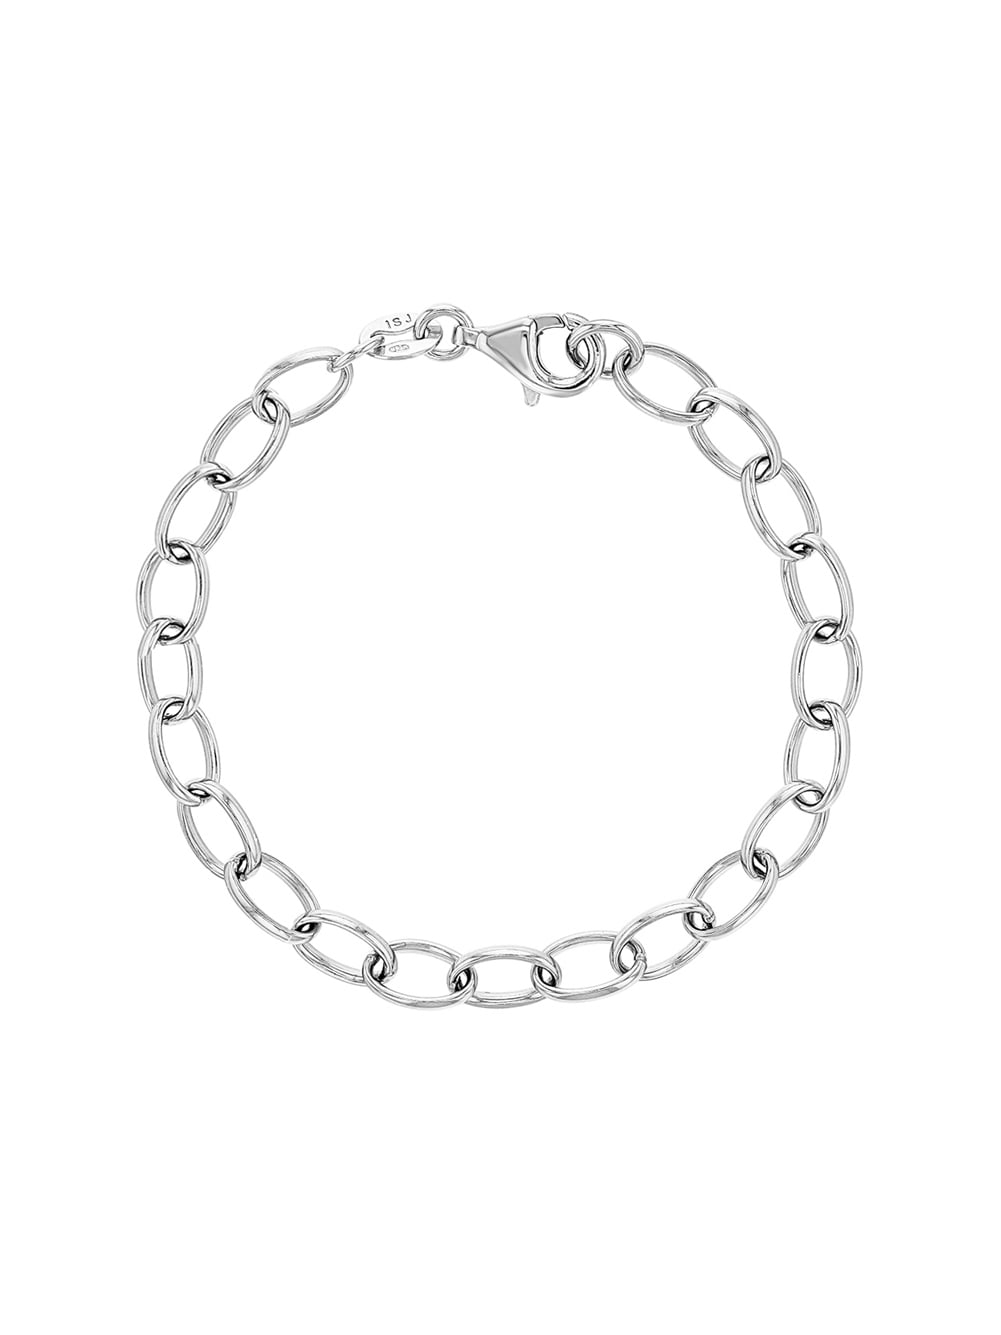 In Season Jewelry - 925 Sterling Silver 6